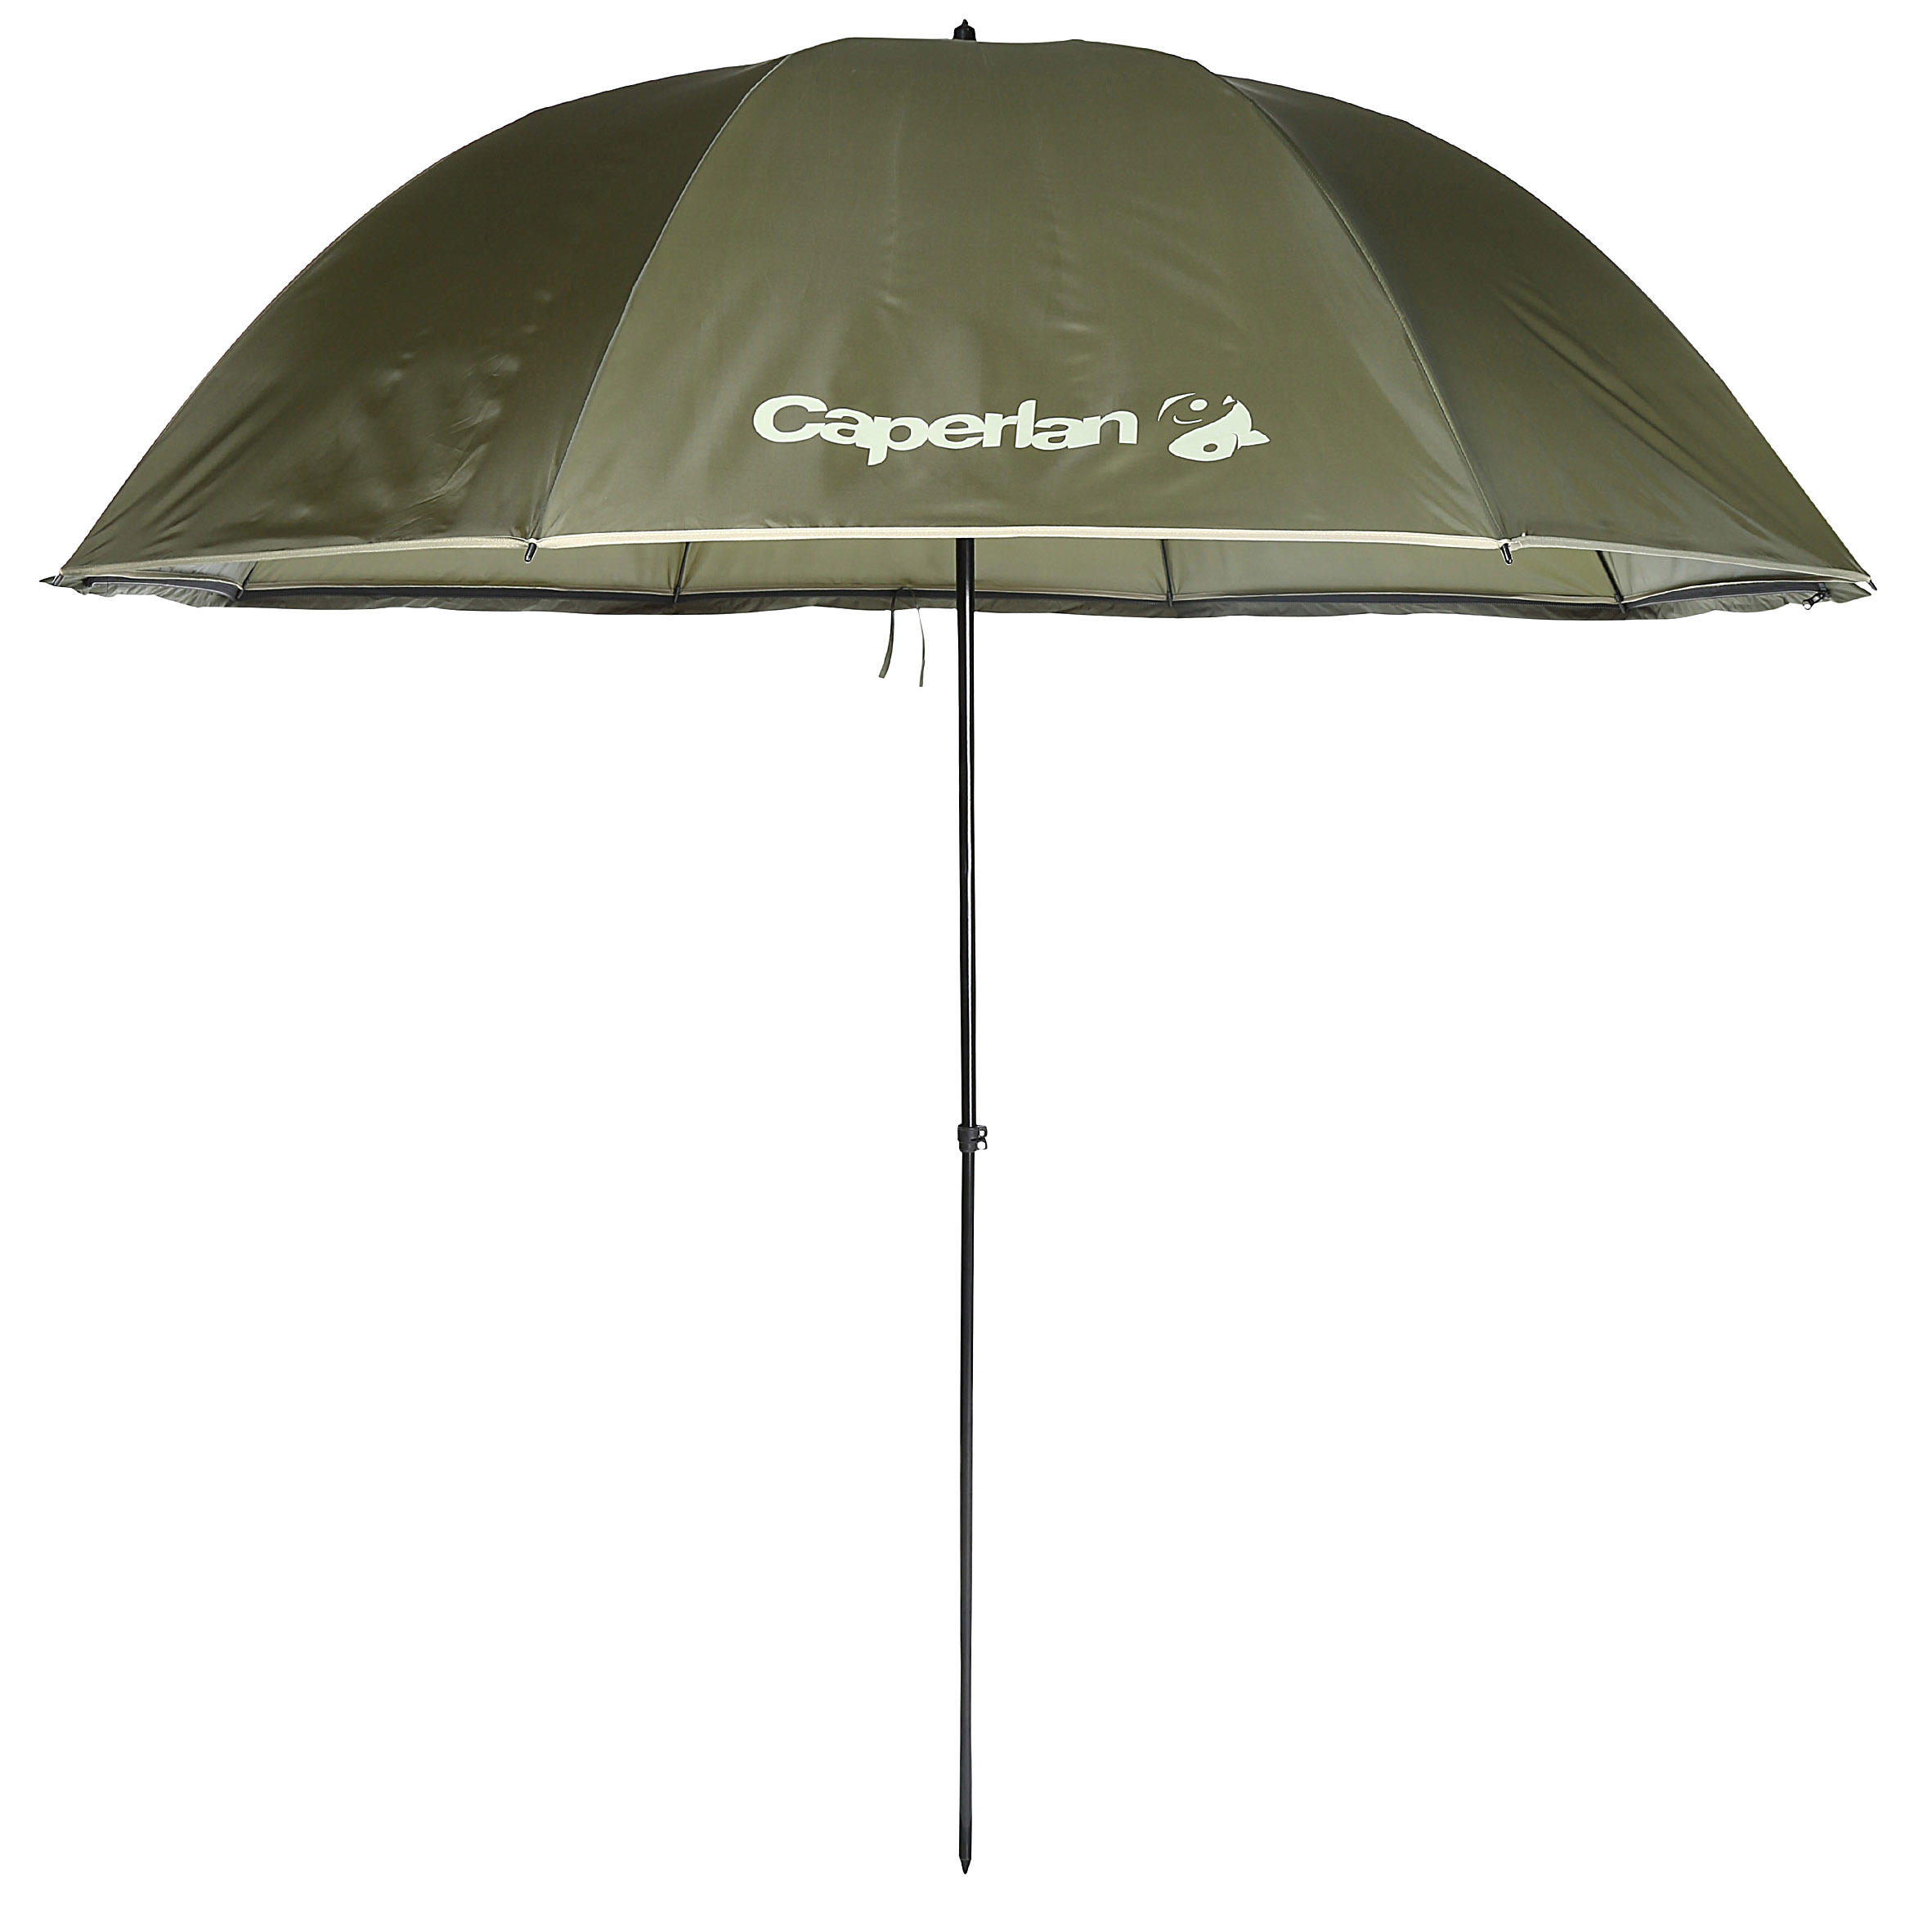 umbrella in decathlon